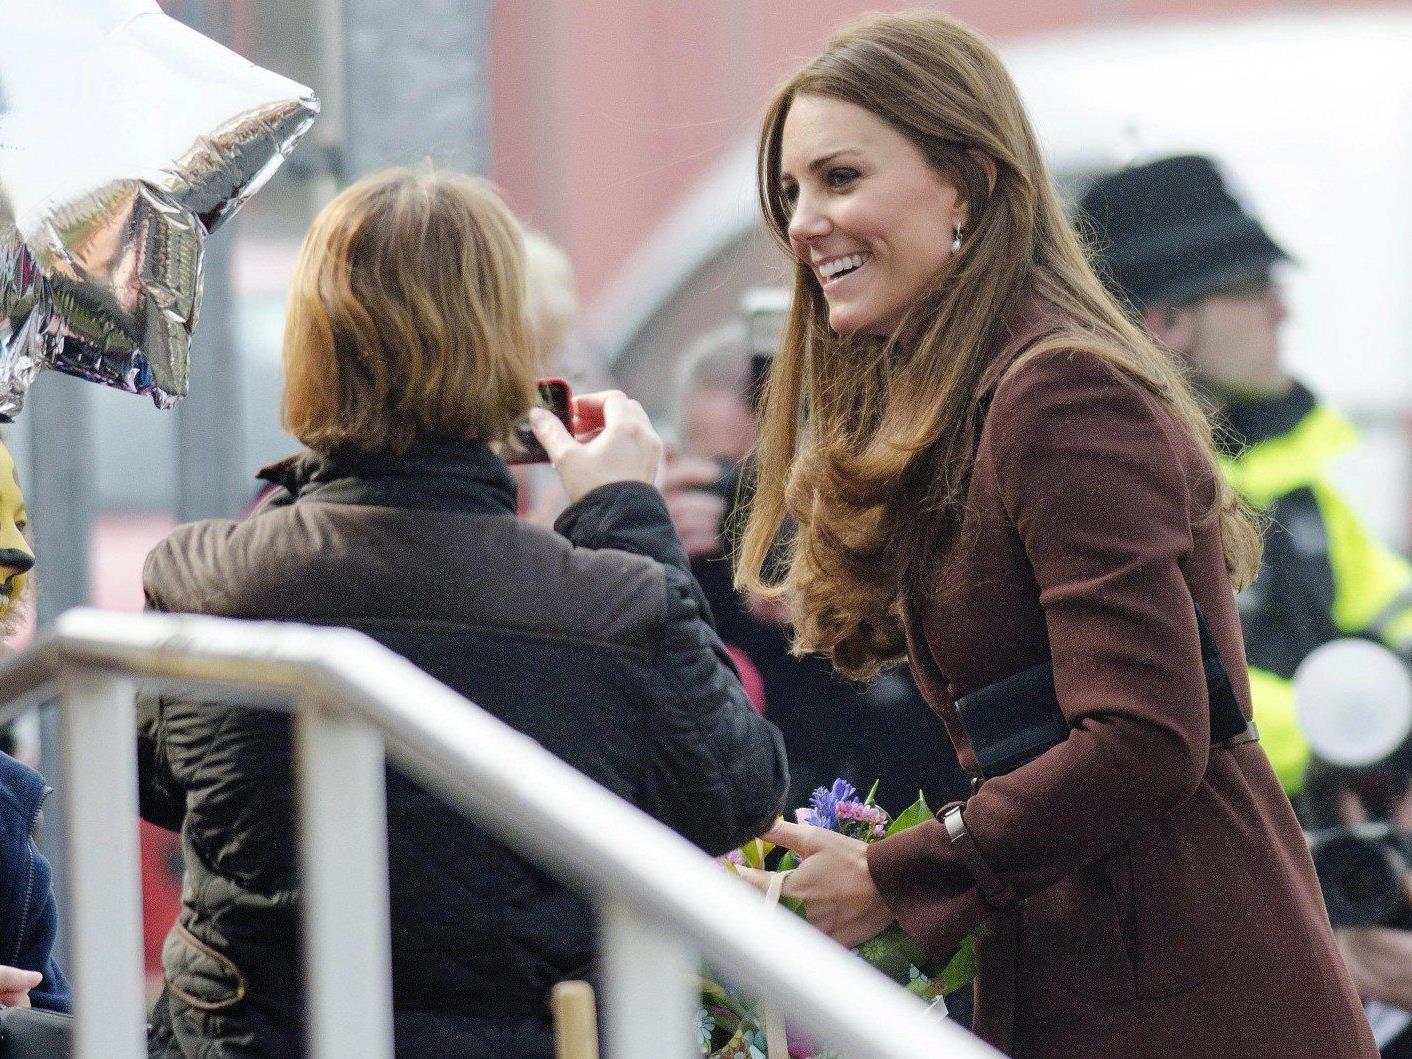 Herzogin Kate verplapperte sich bei ihren Fans. Wird es ein Mädchen?